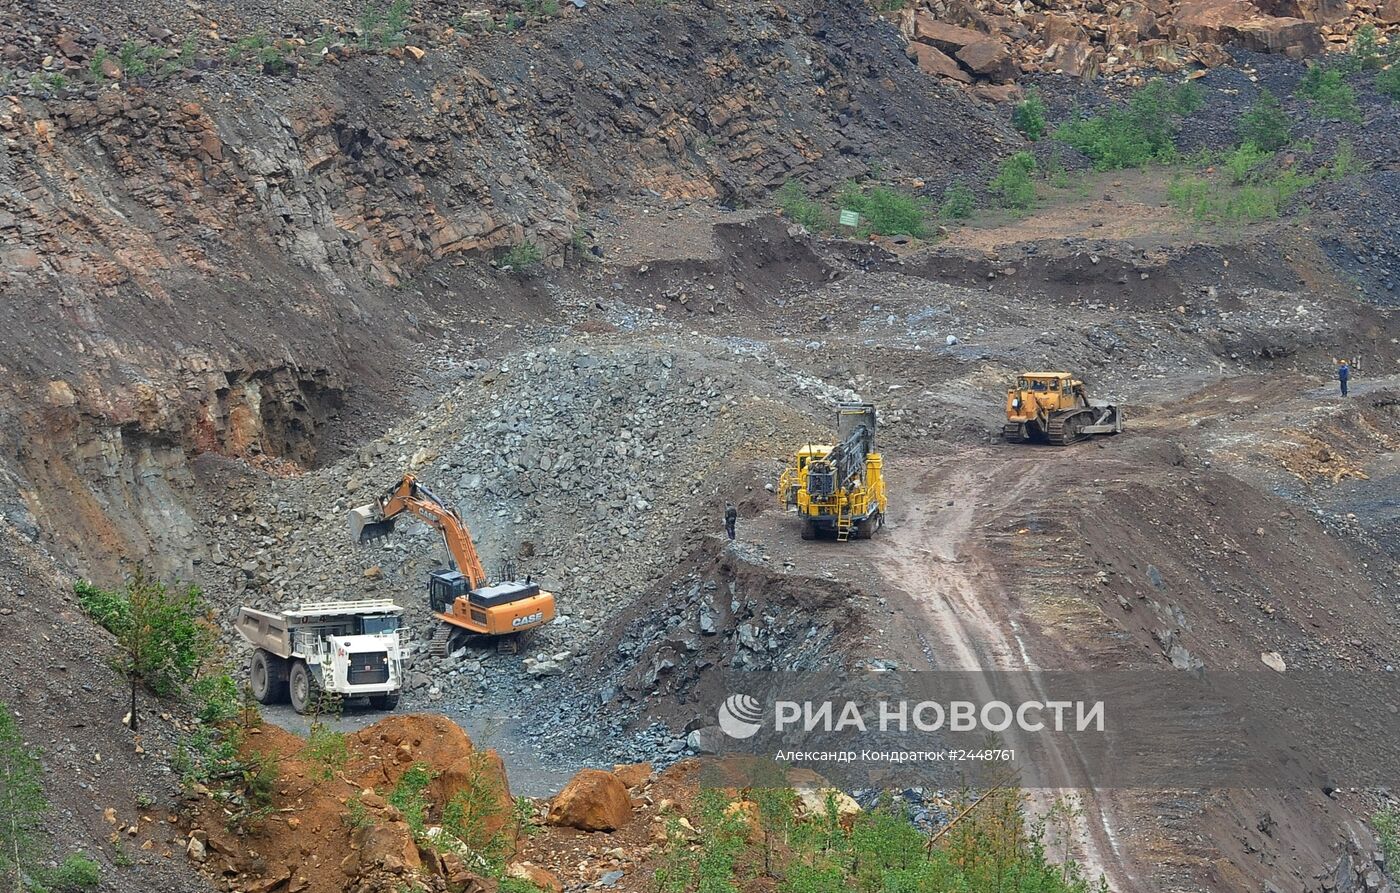 Работа Бакальского рудника в Челябинской области